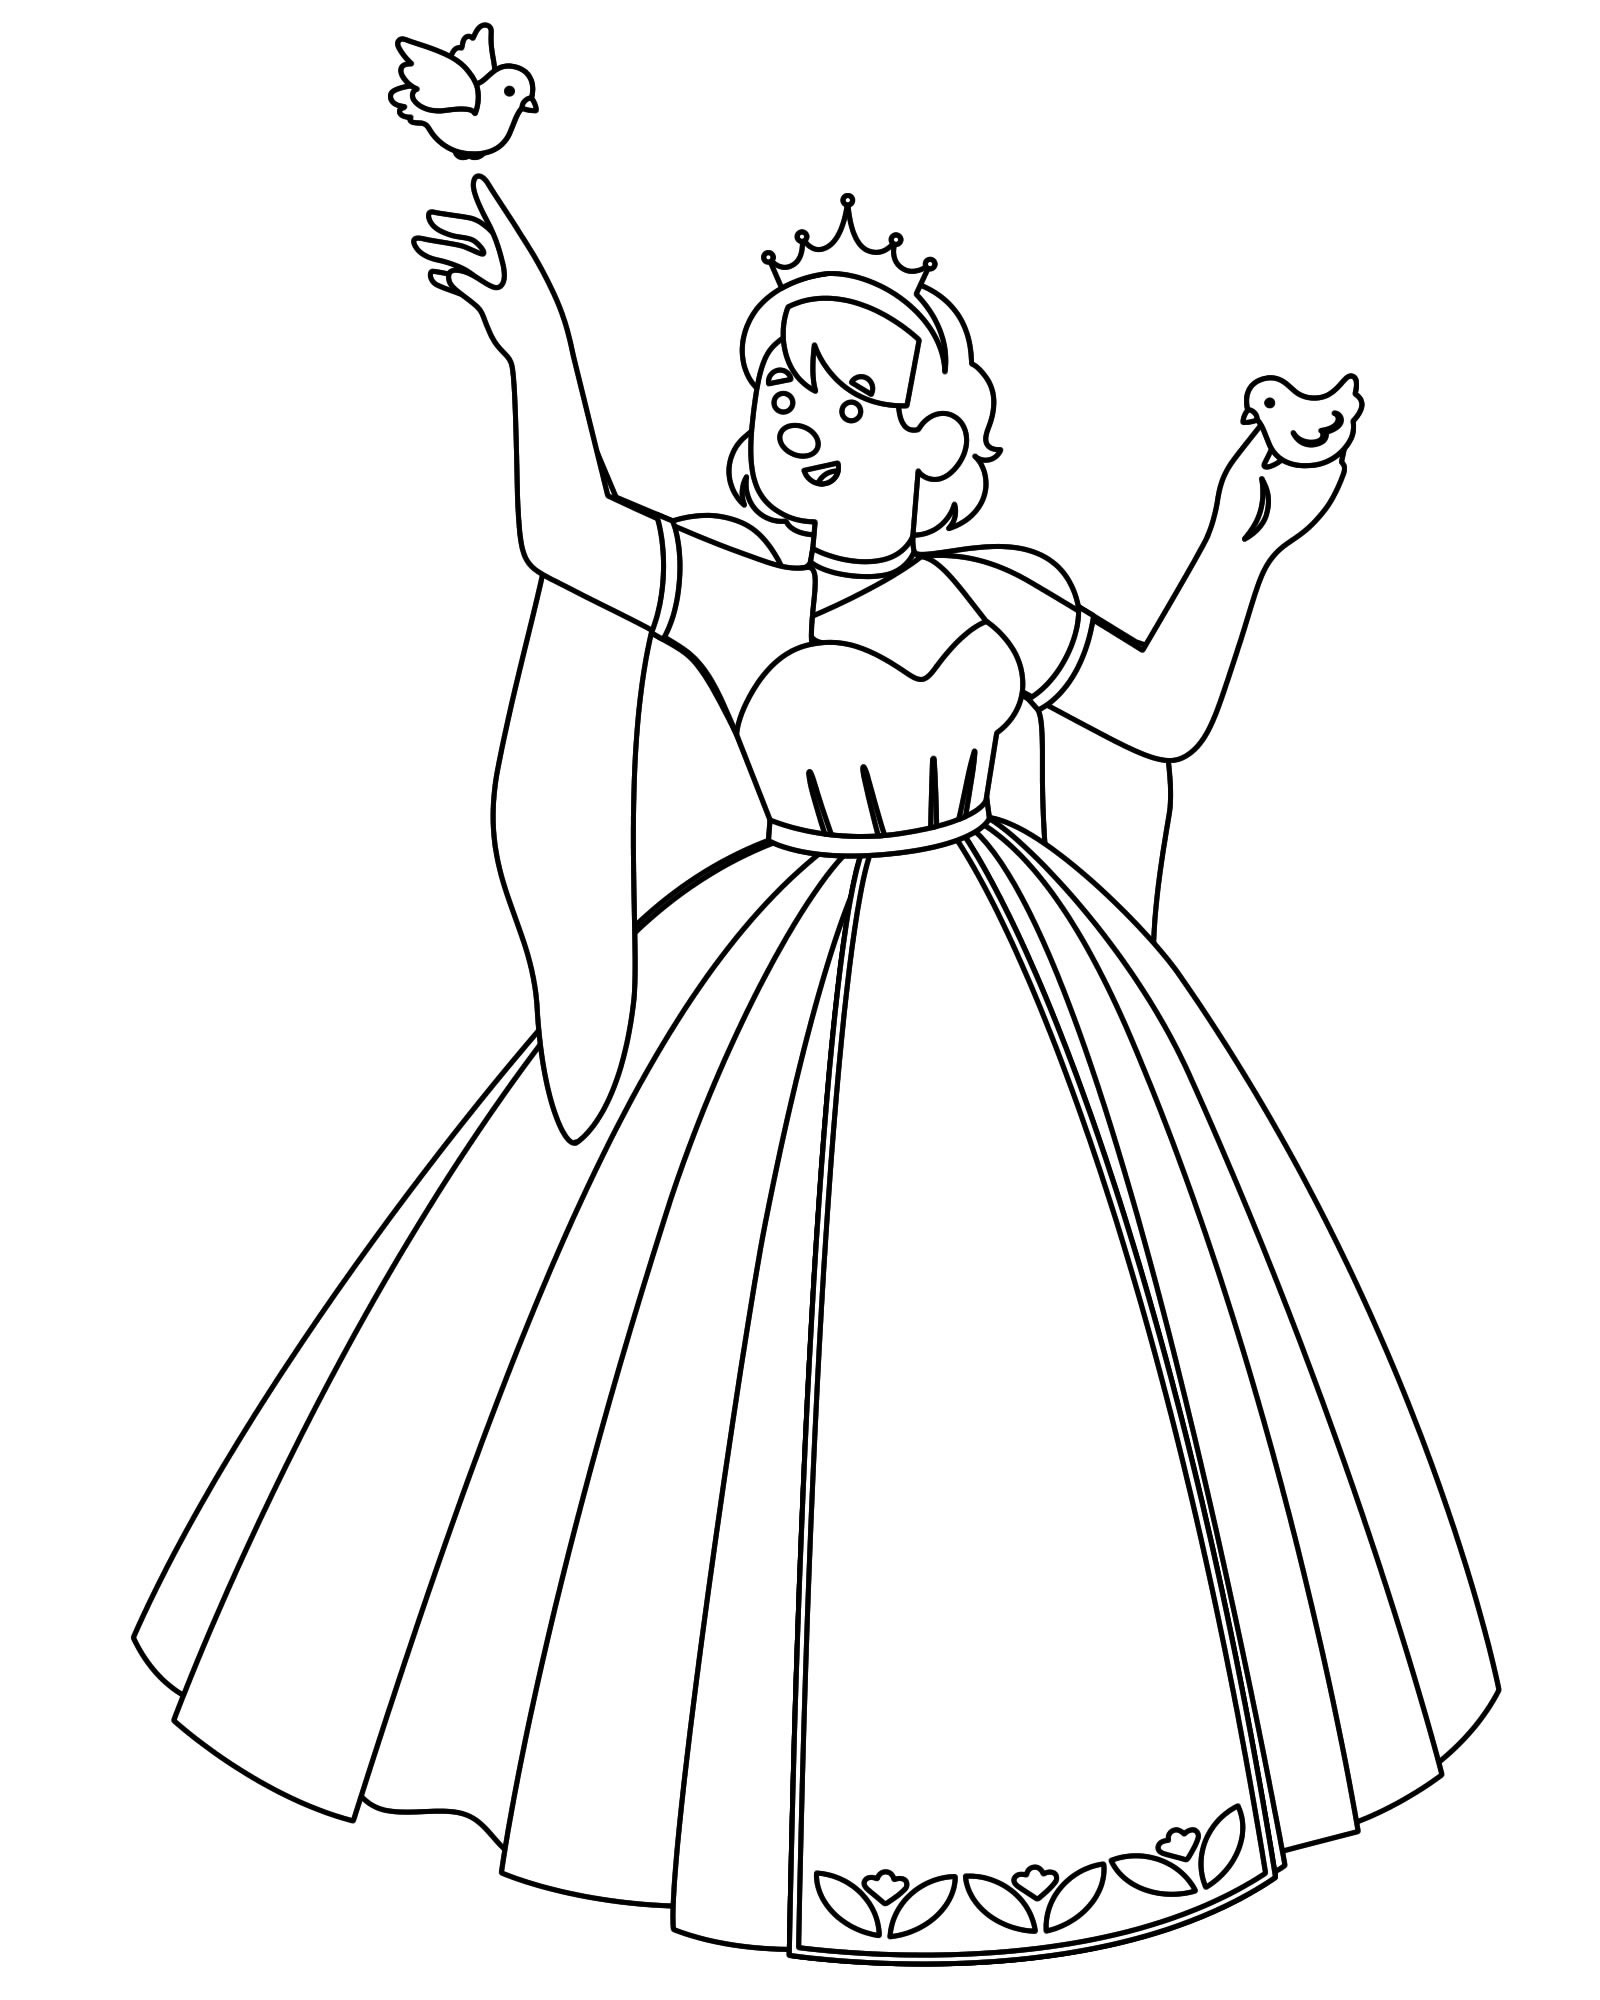 Раскраски для девочек «Принцессы» (распечатать раскраску бесплатно в формате А4)